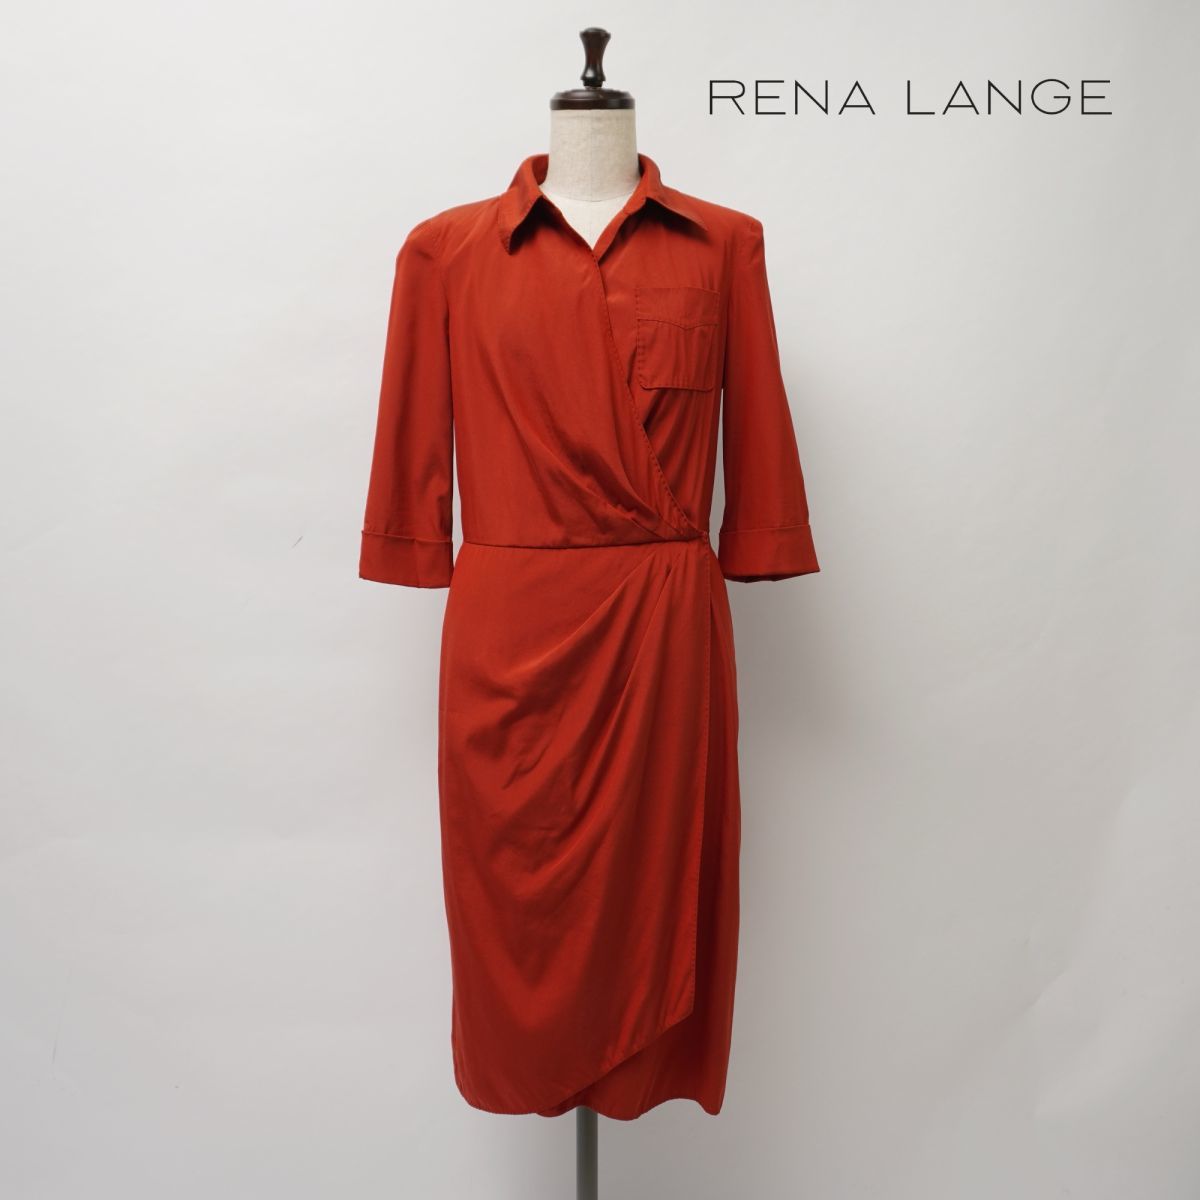 【気質アップ】 LANGE RENA 美品 レナランゲ サイズS*JC497 レッド 赤 レディース 七分袖 襟付きラップワンピース Sサイズ